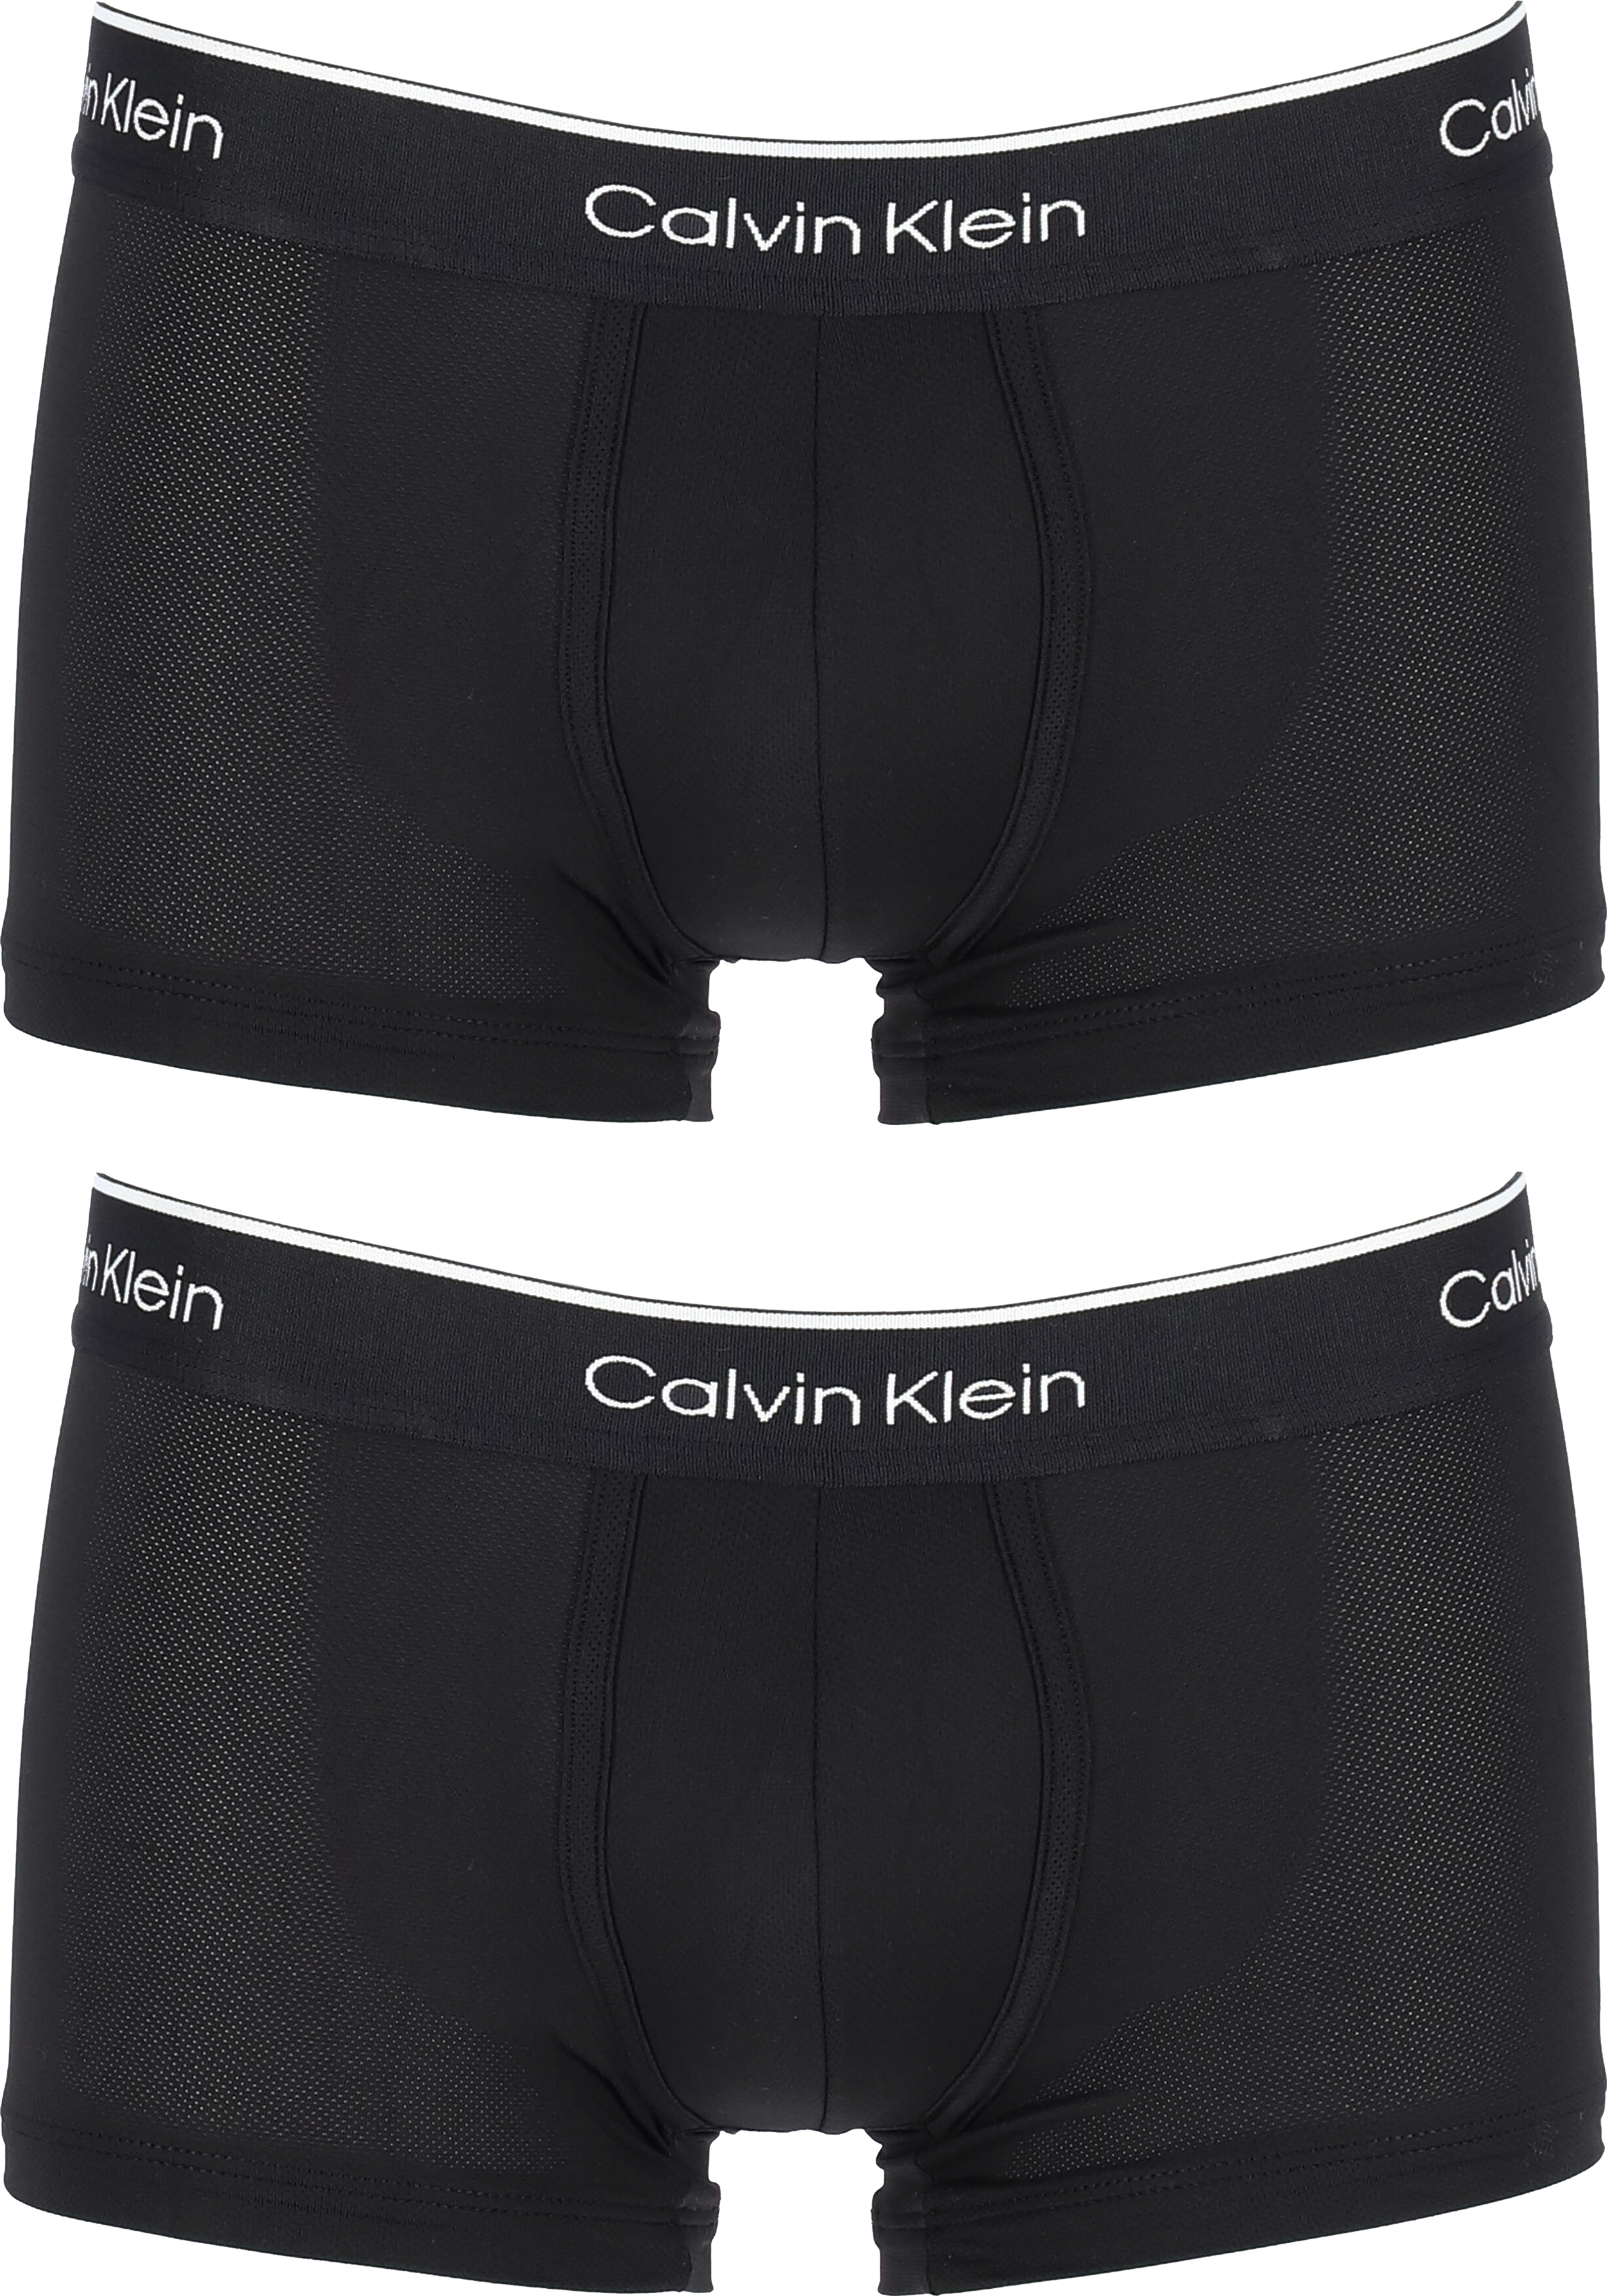 Leerling gazon droog Calvin Klein Pro micro low rise trunks (2-pack), microfiber lage heren... -  Shop de nieuwste voorjaarsmode